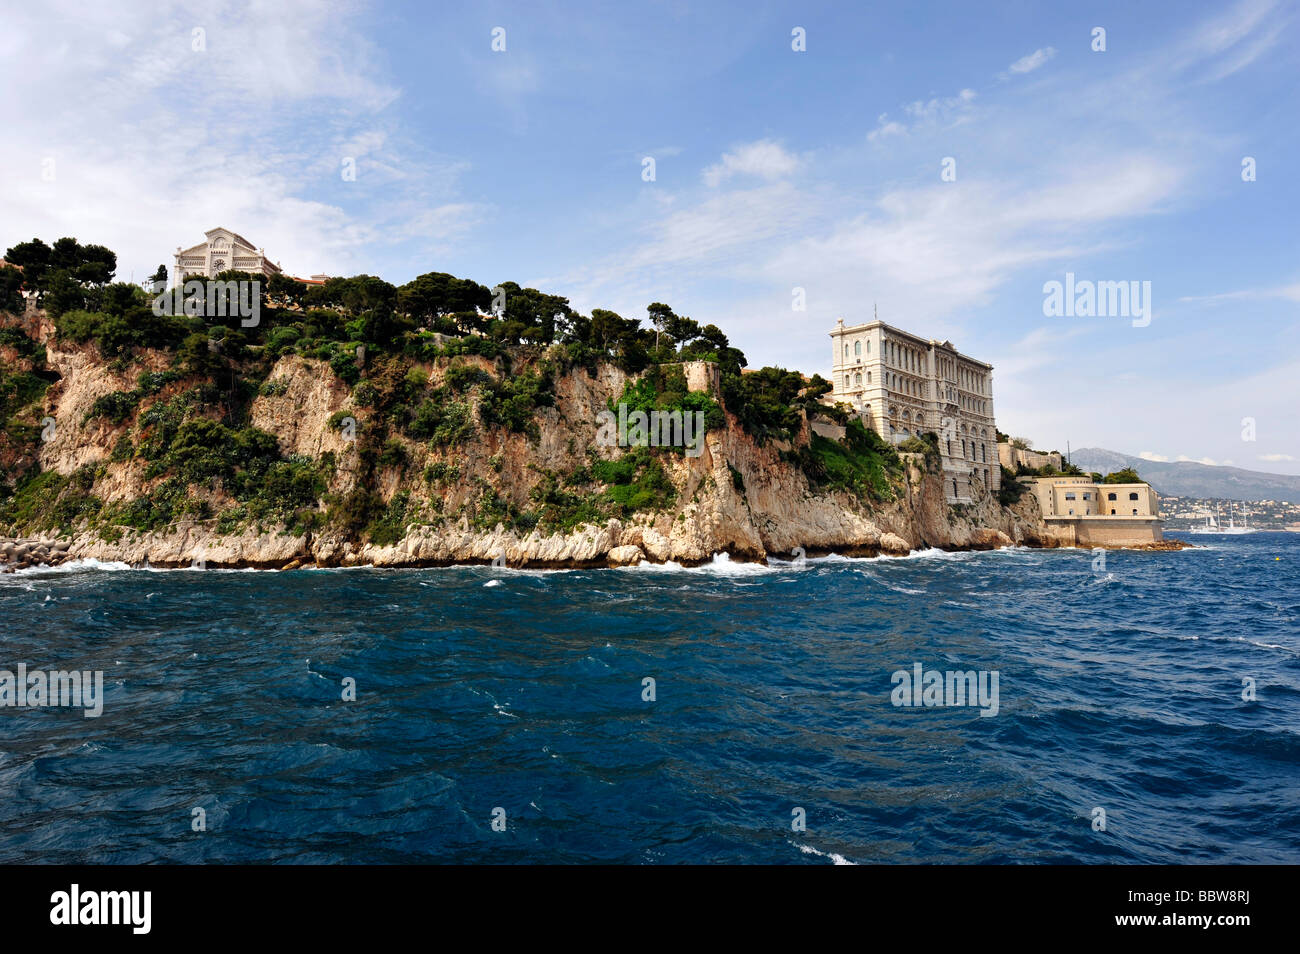 Ozeanographische Museum Monaco und fürstlichen Palast von Monaco. Stockfoto